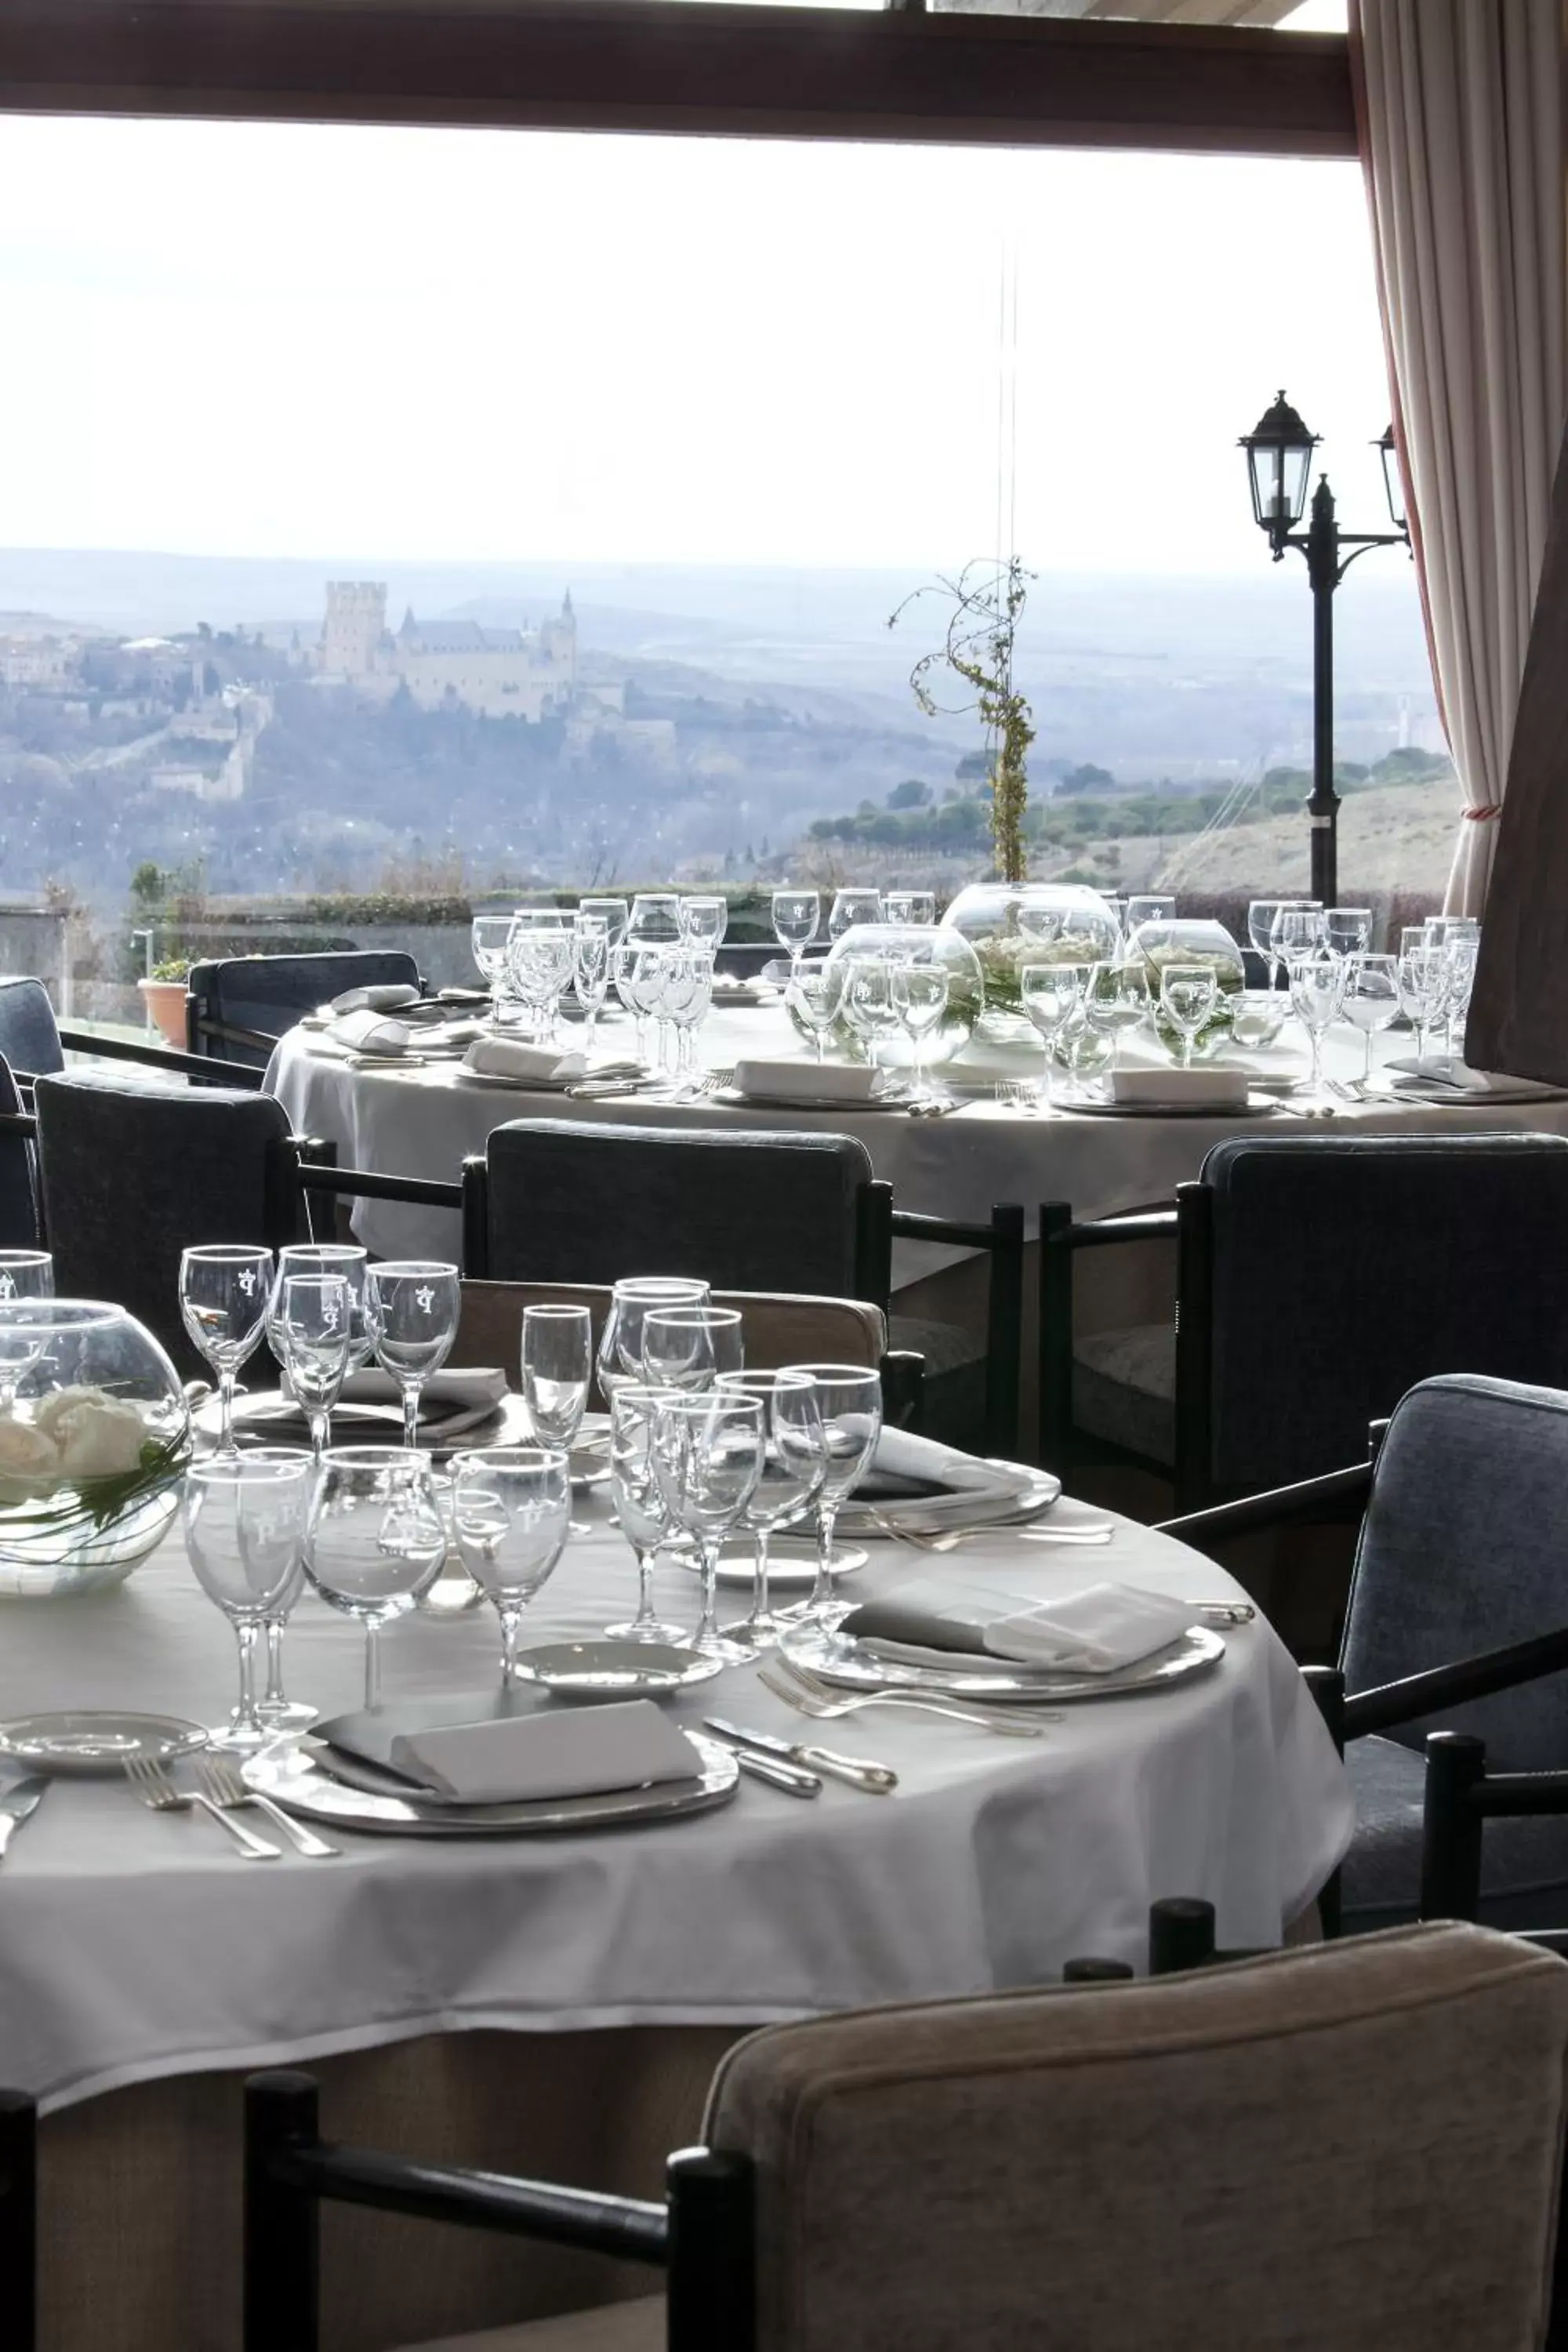 Banquet/Function facilities, Restaurant/Places to Eat in Parador de Segovia